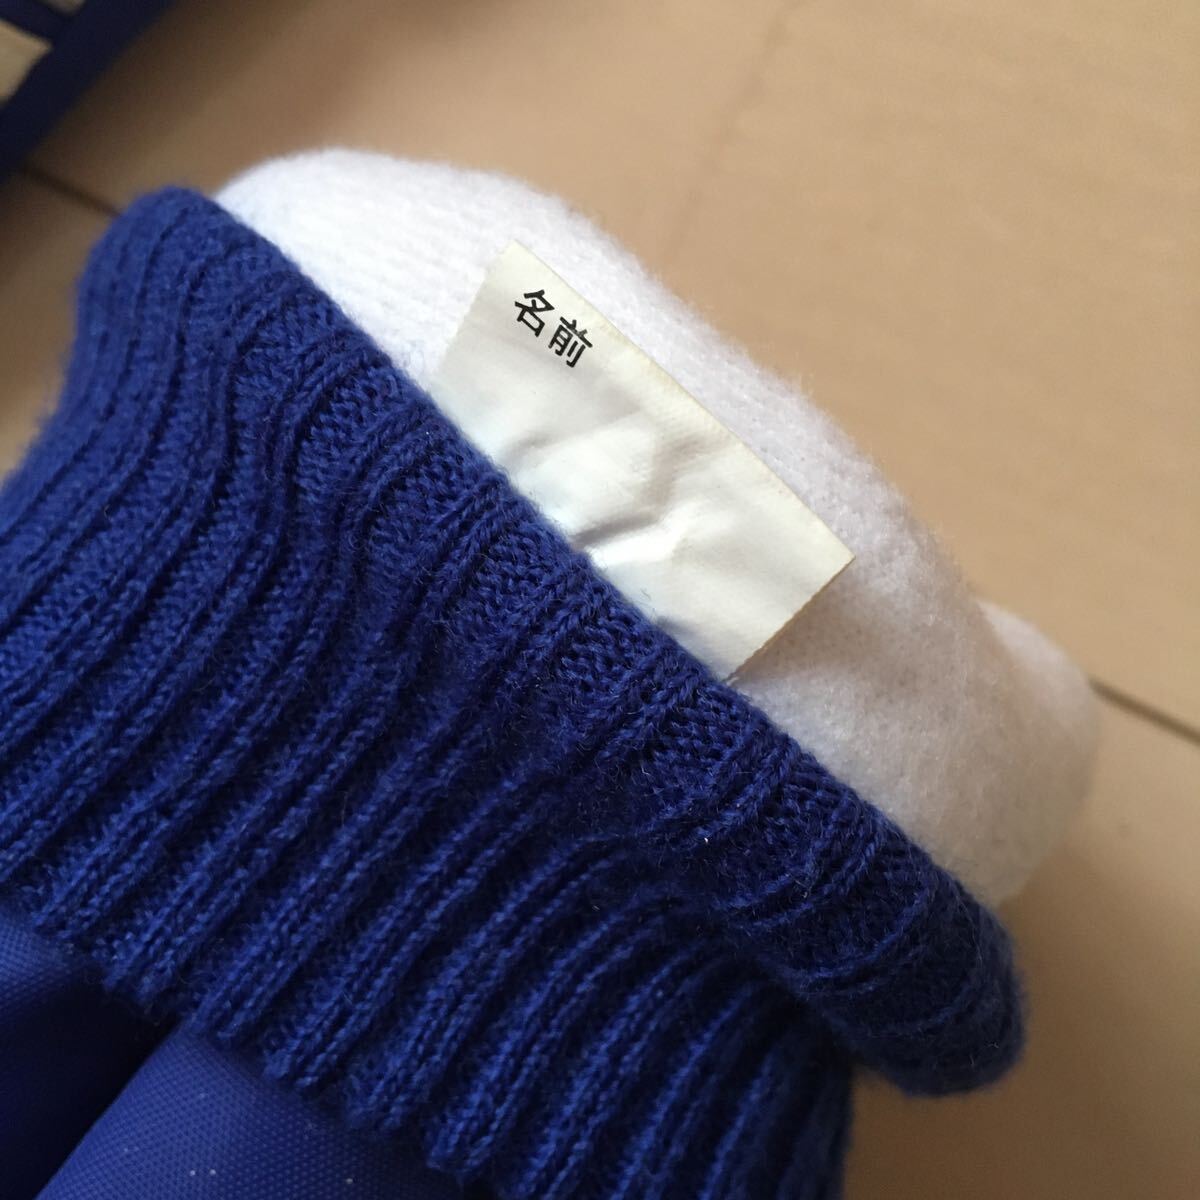  перчатки перчатка лыжи перчатка сноуборд перчатка Adidas adidas синий 13-14 лет ....